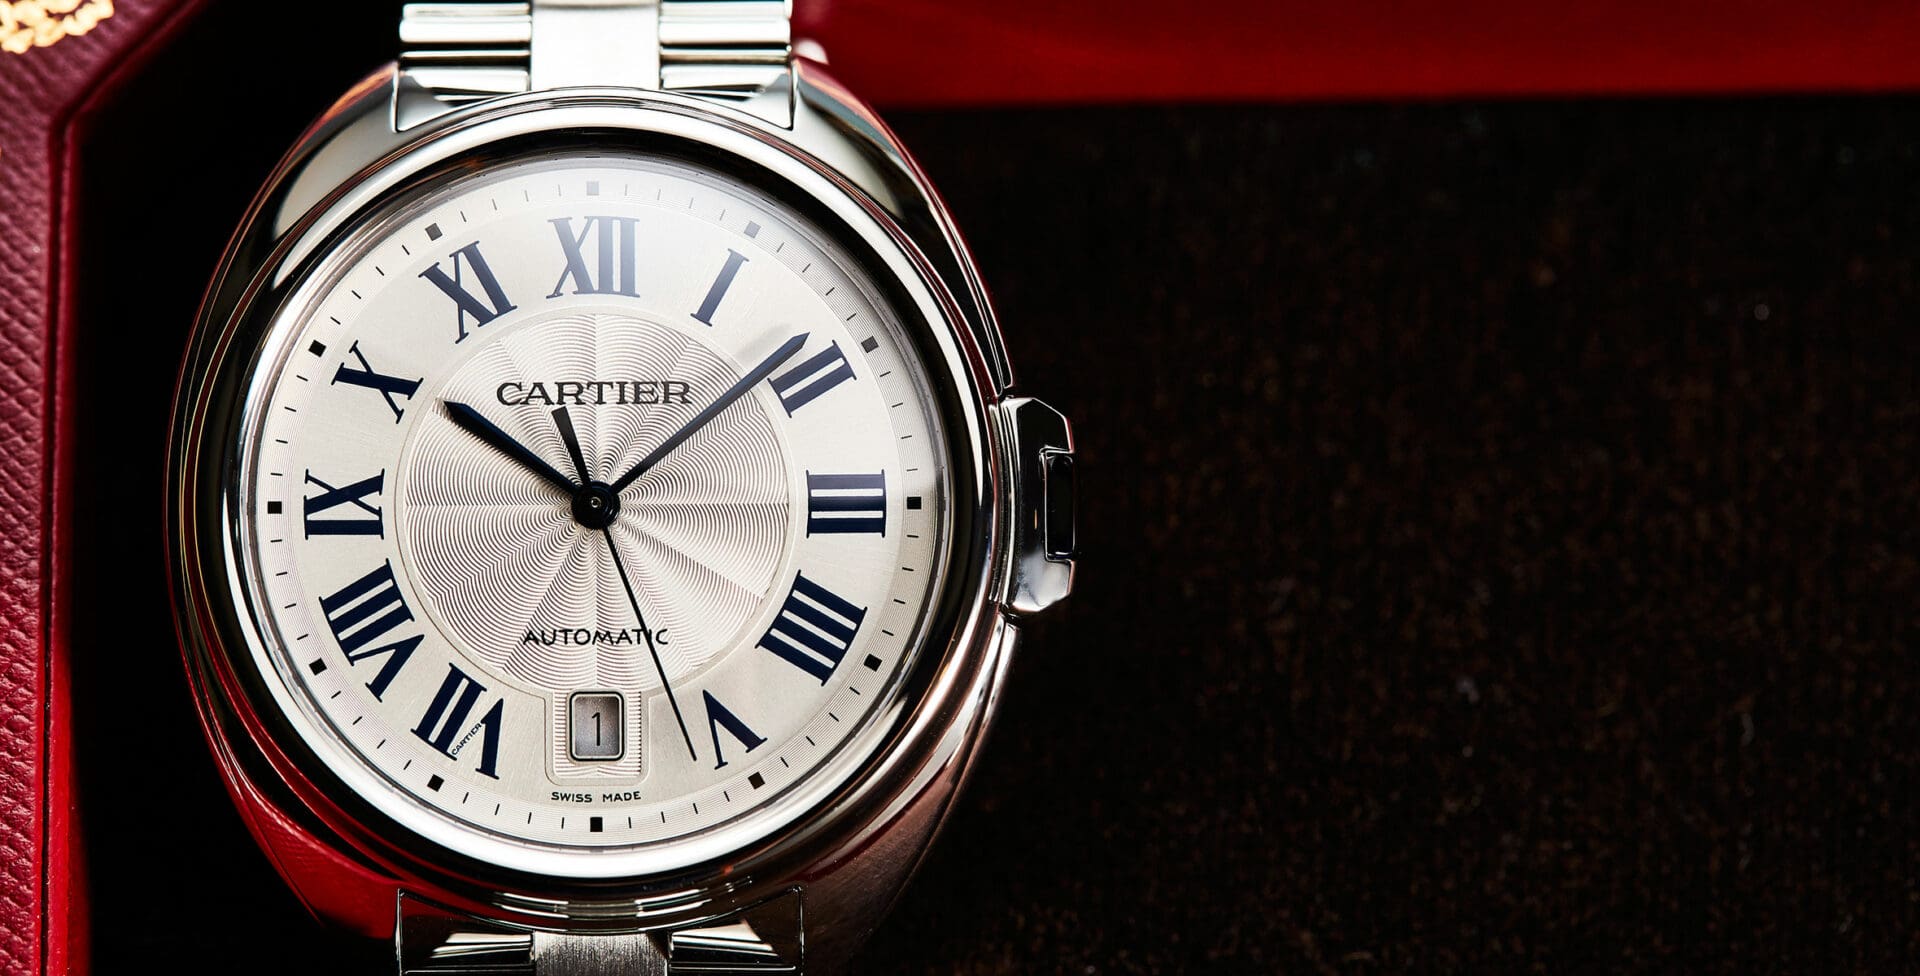 IN-DEPTH: The Cartier Clé de Cartier in steel